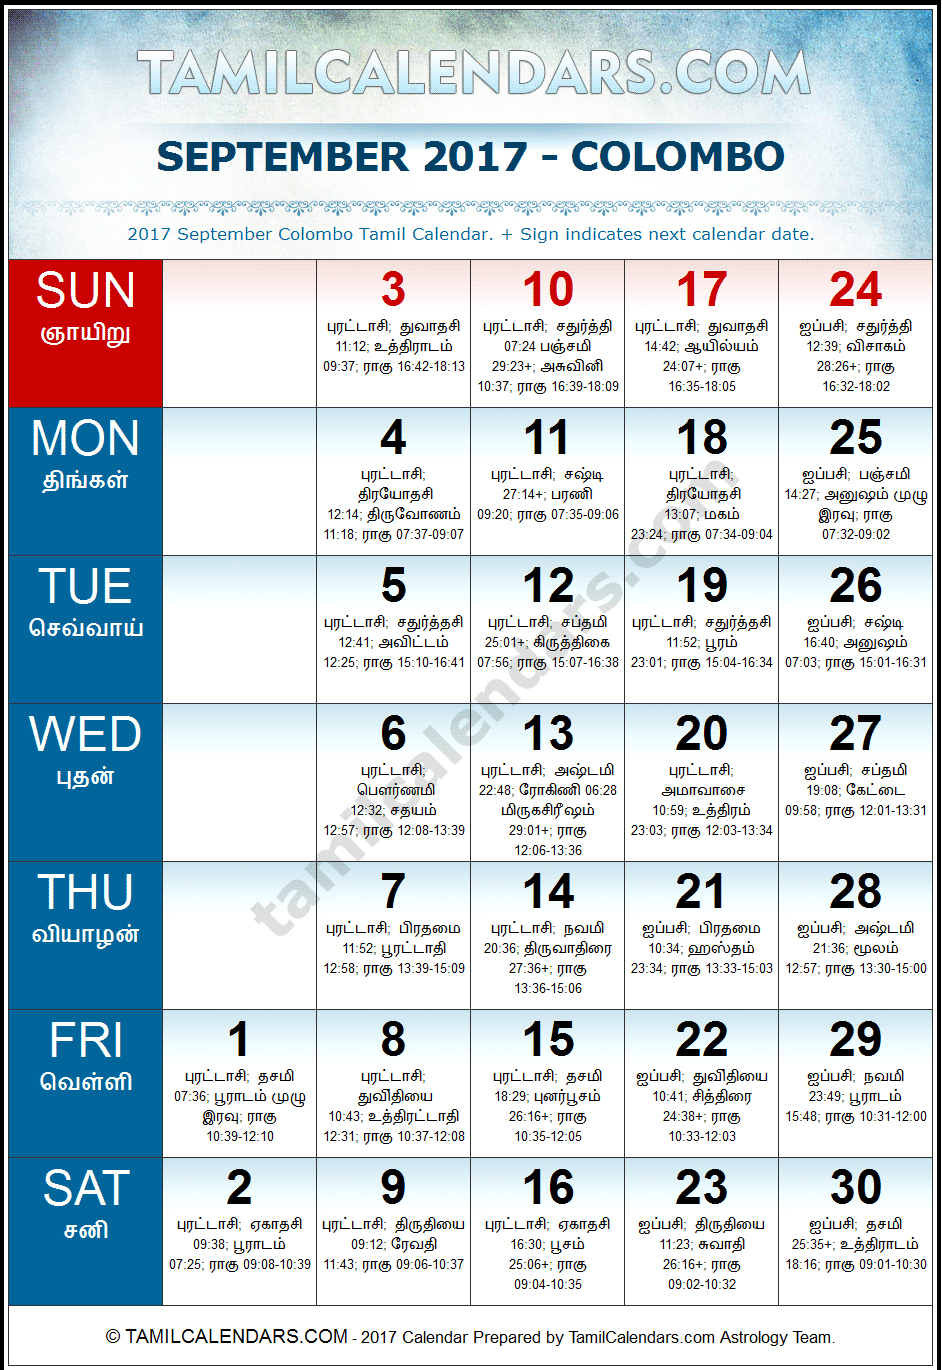 September 2017 Tamil Calendar for Sri Lanka (Colombo)